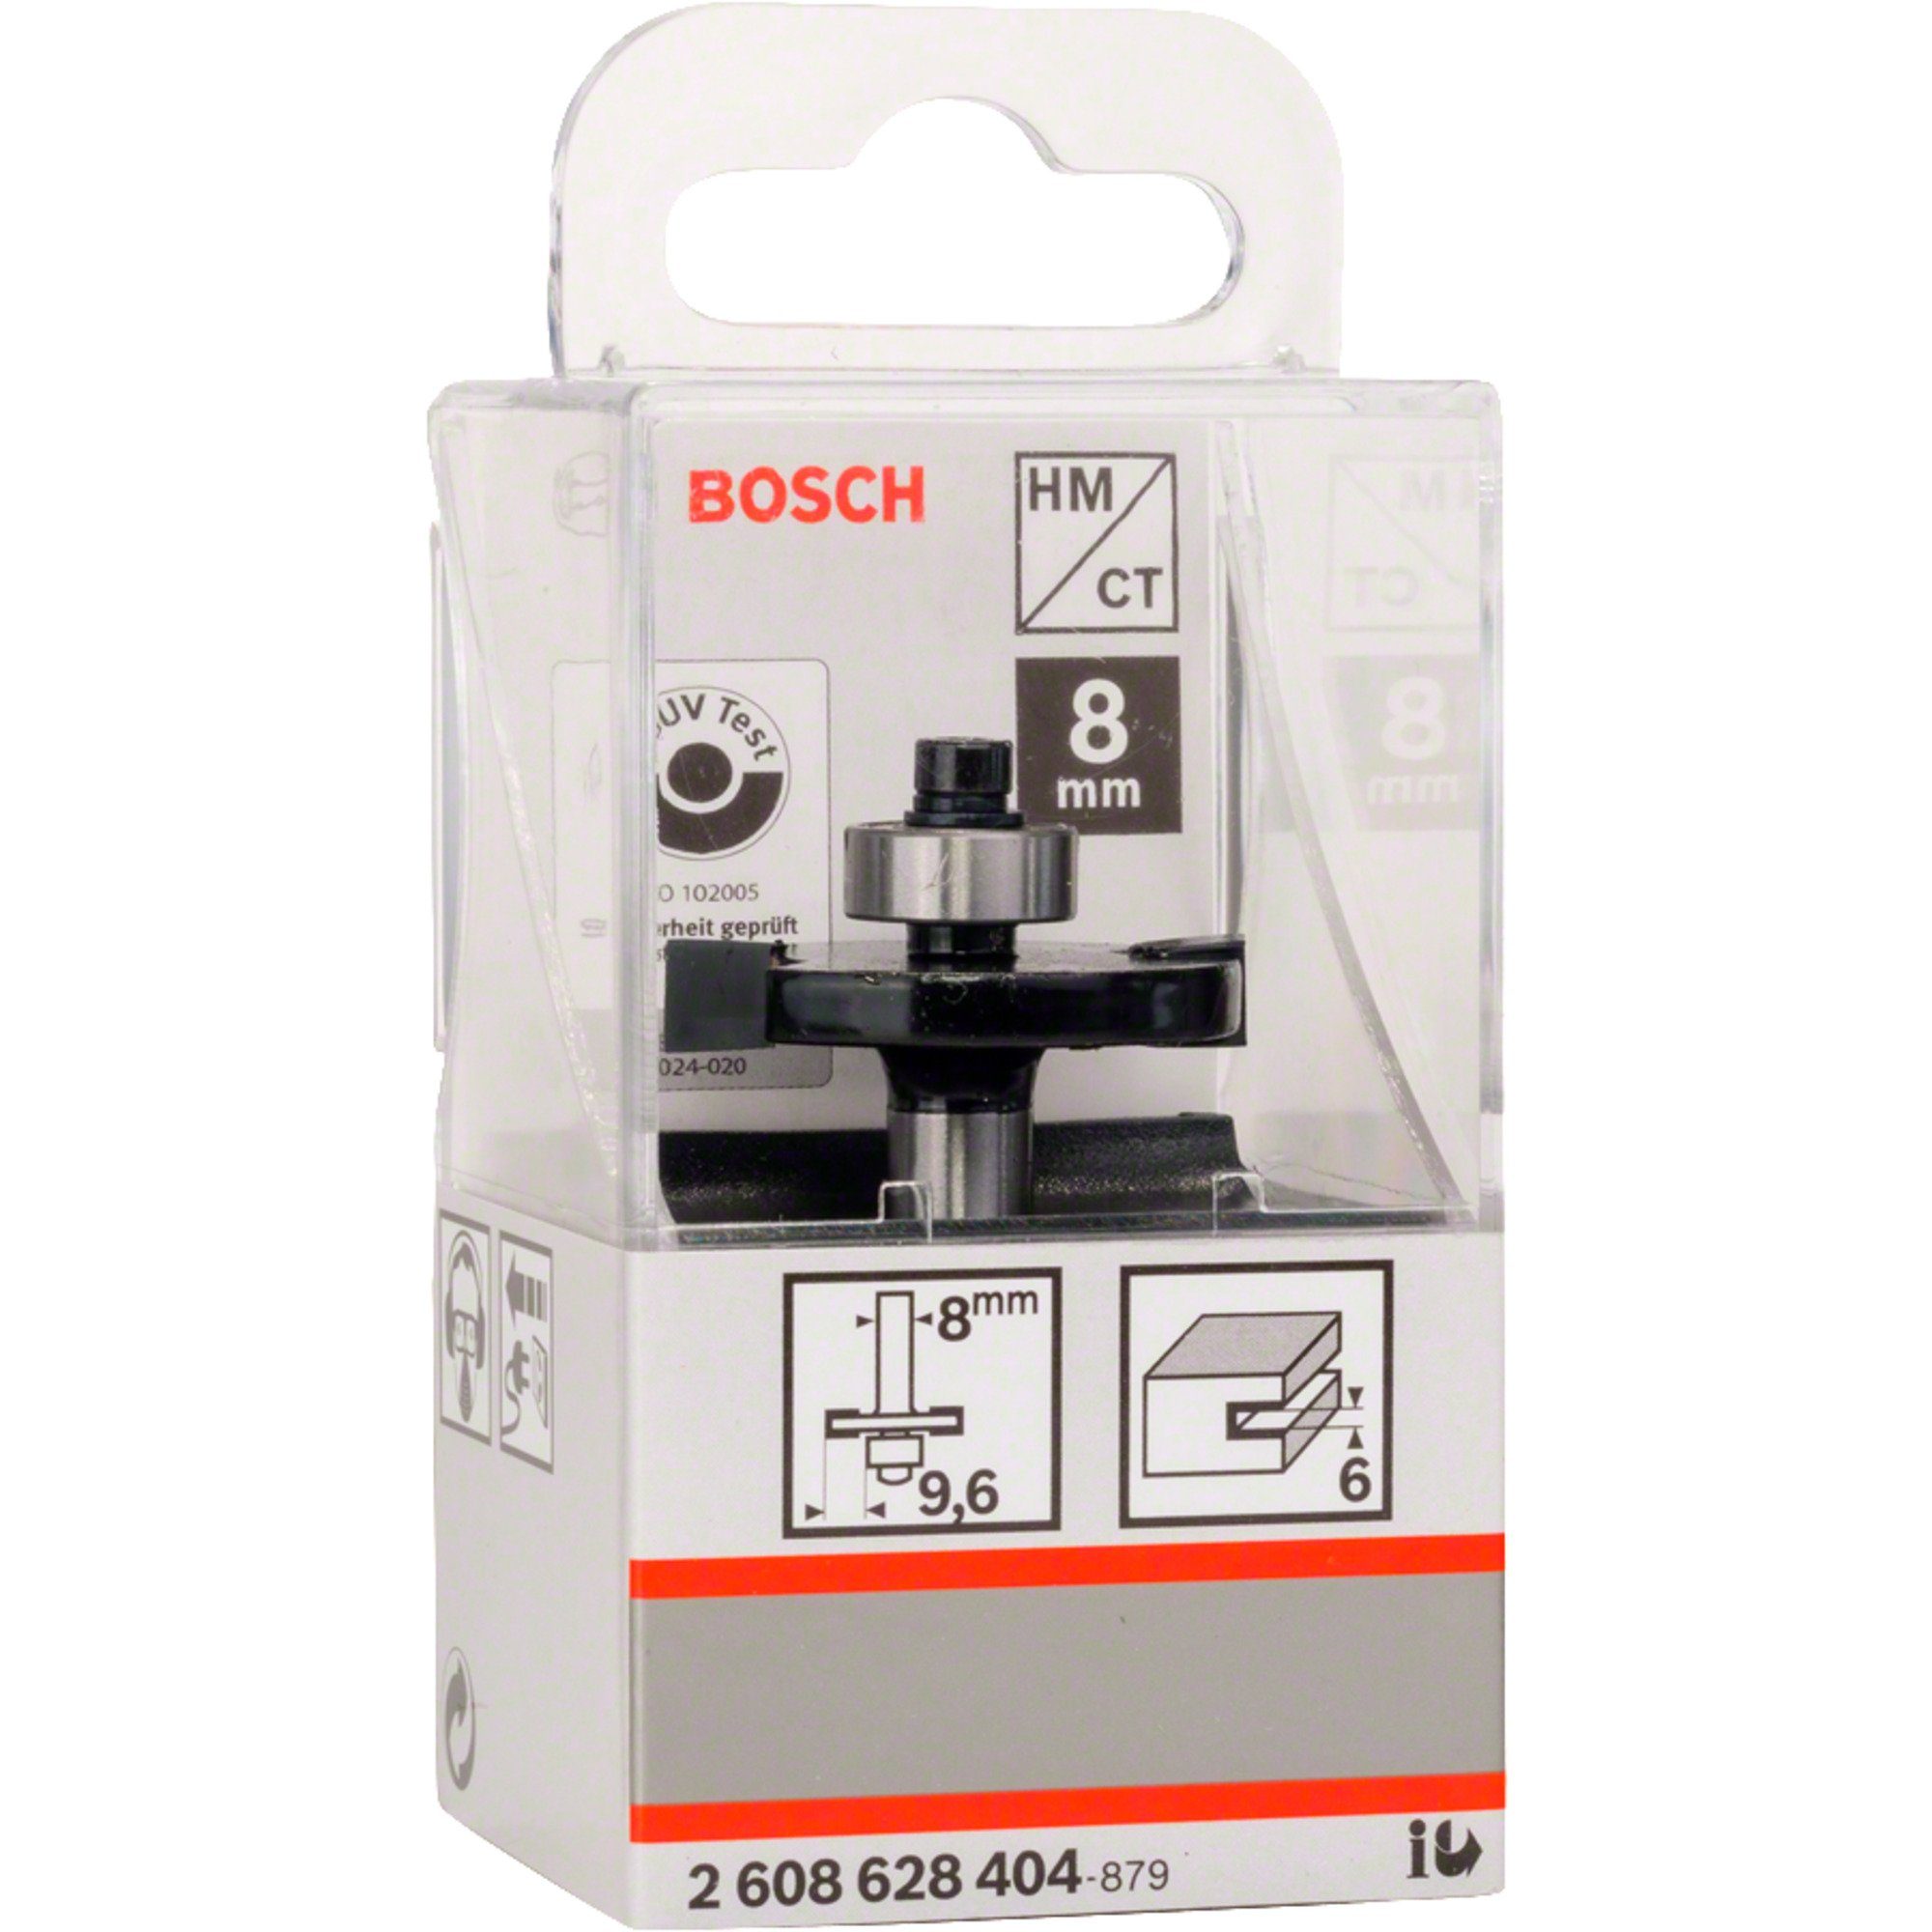 BOSCH Fräse Bosch Professional Scheiben-Nutfräser Standard for